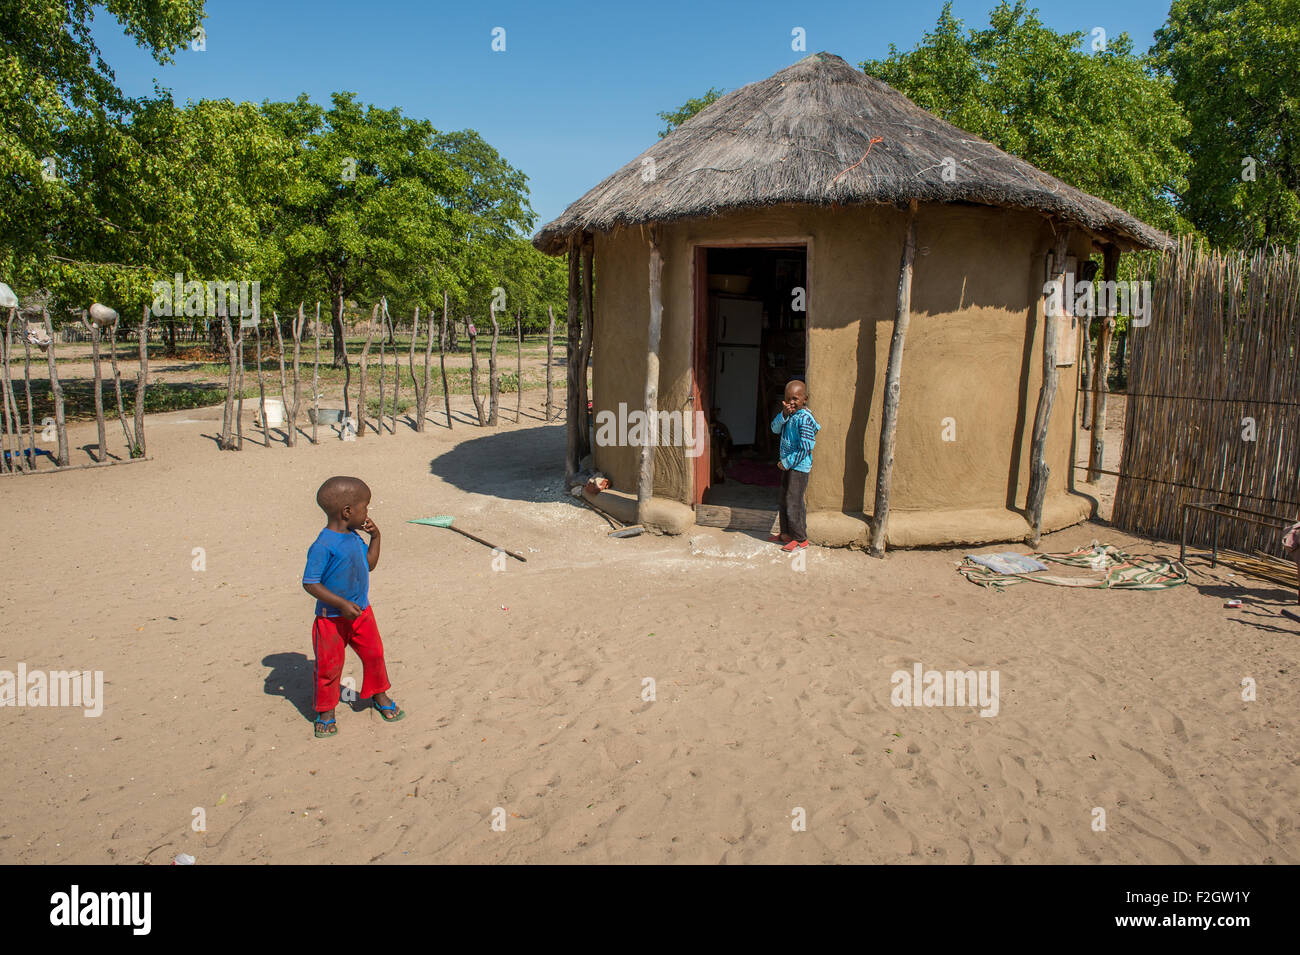 Les enfants africains jouer en face d'une hutte au toit de chaume au Botswana, l'Afrique Banque D'Images